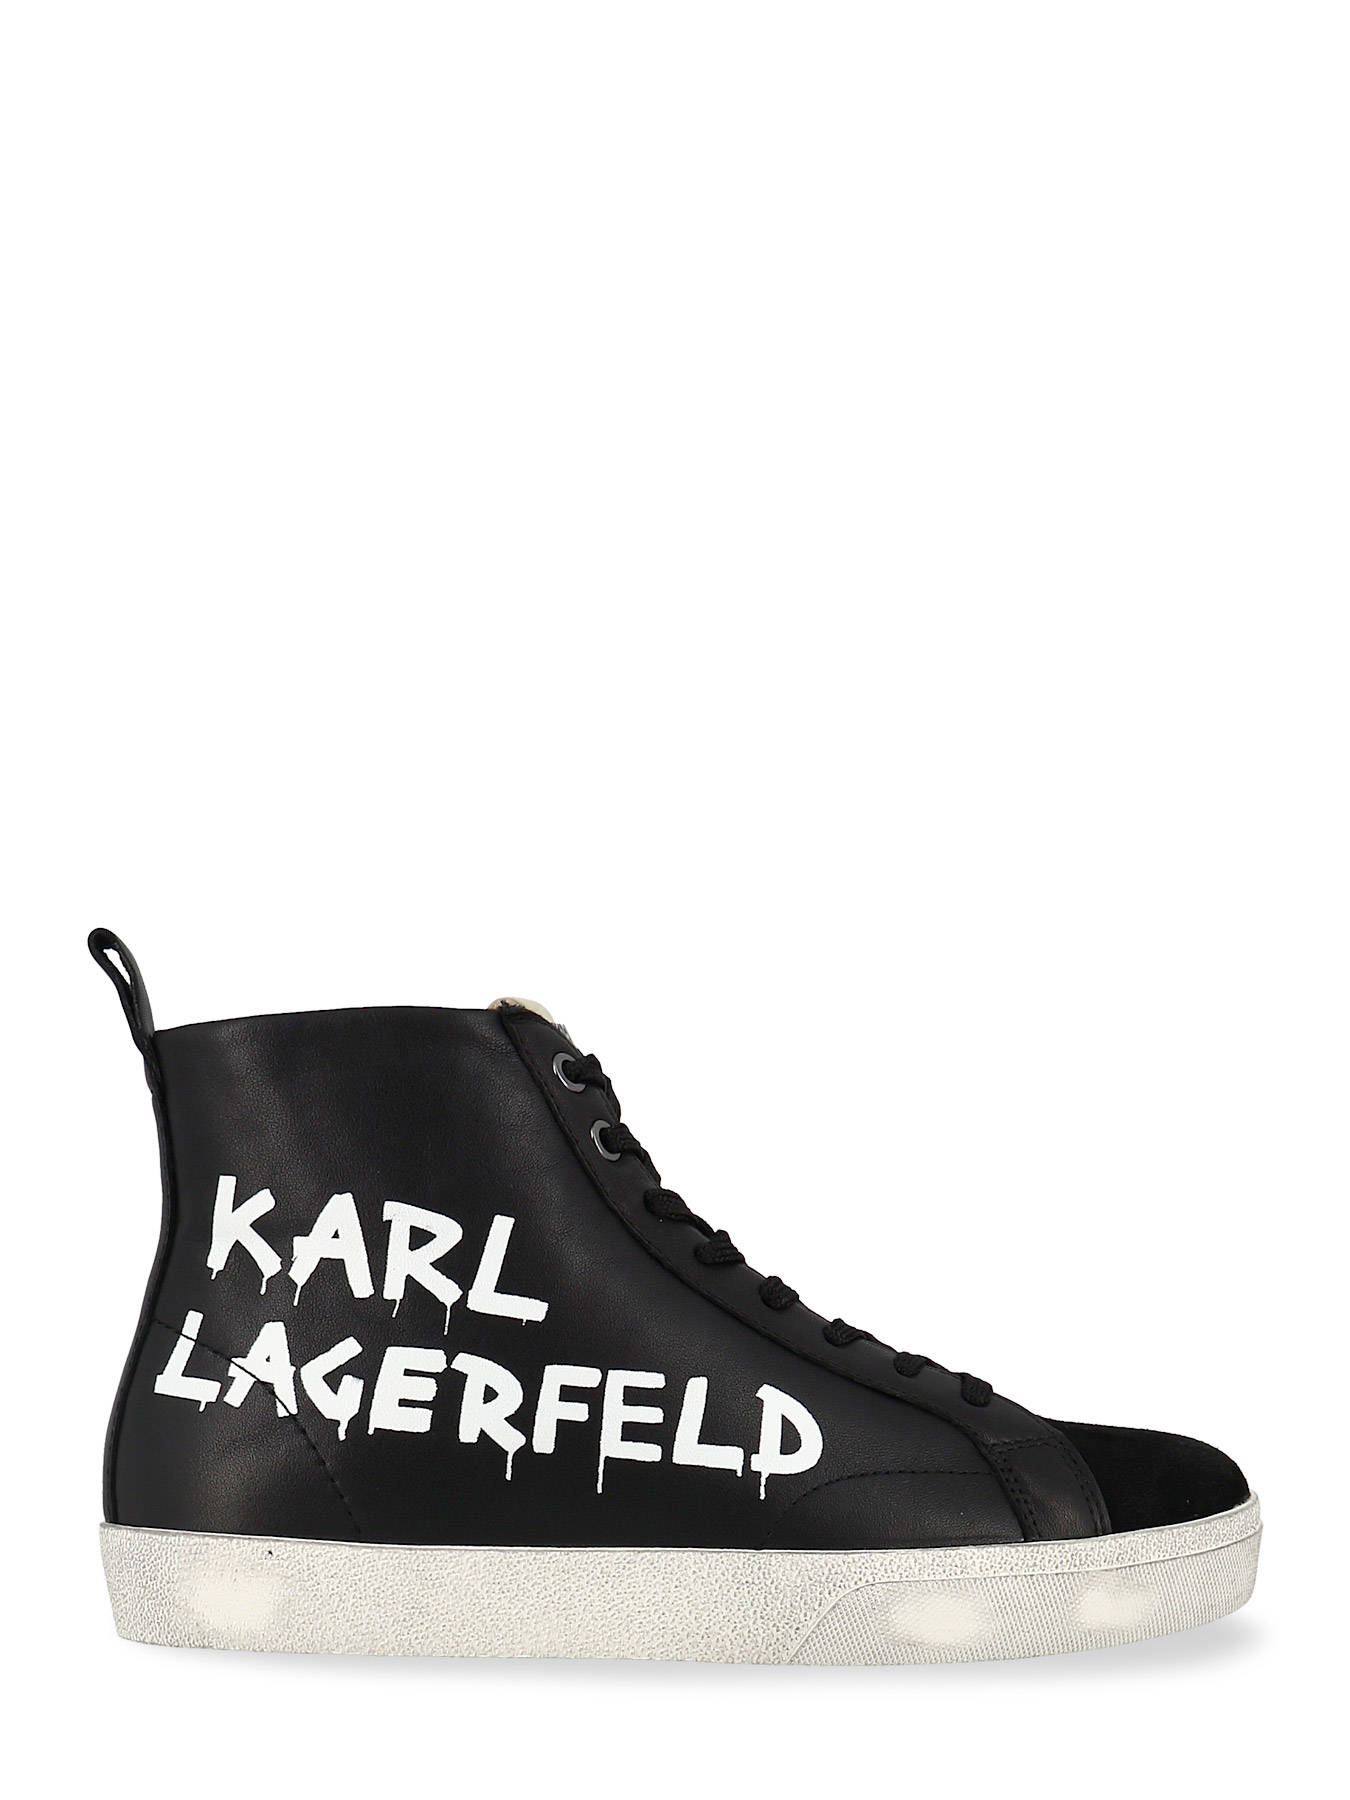 karl lagerfeld sneakers 219